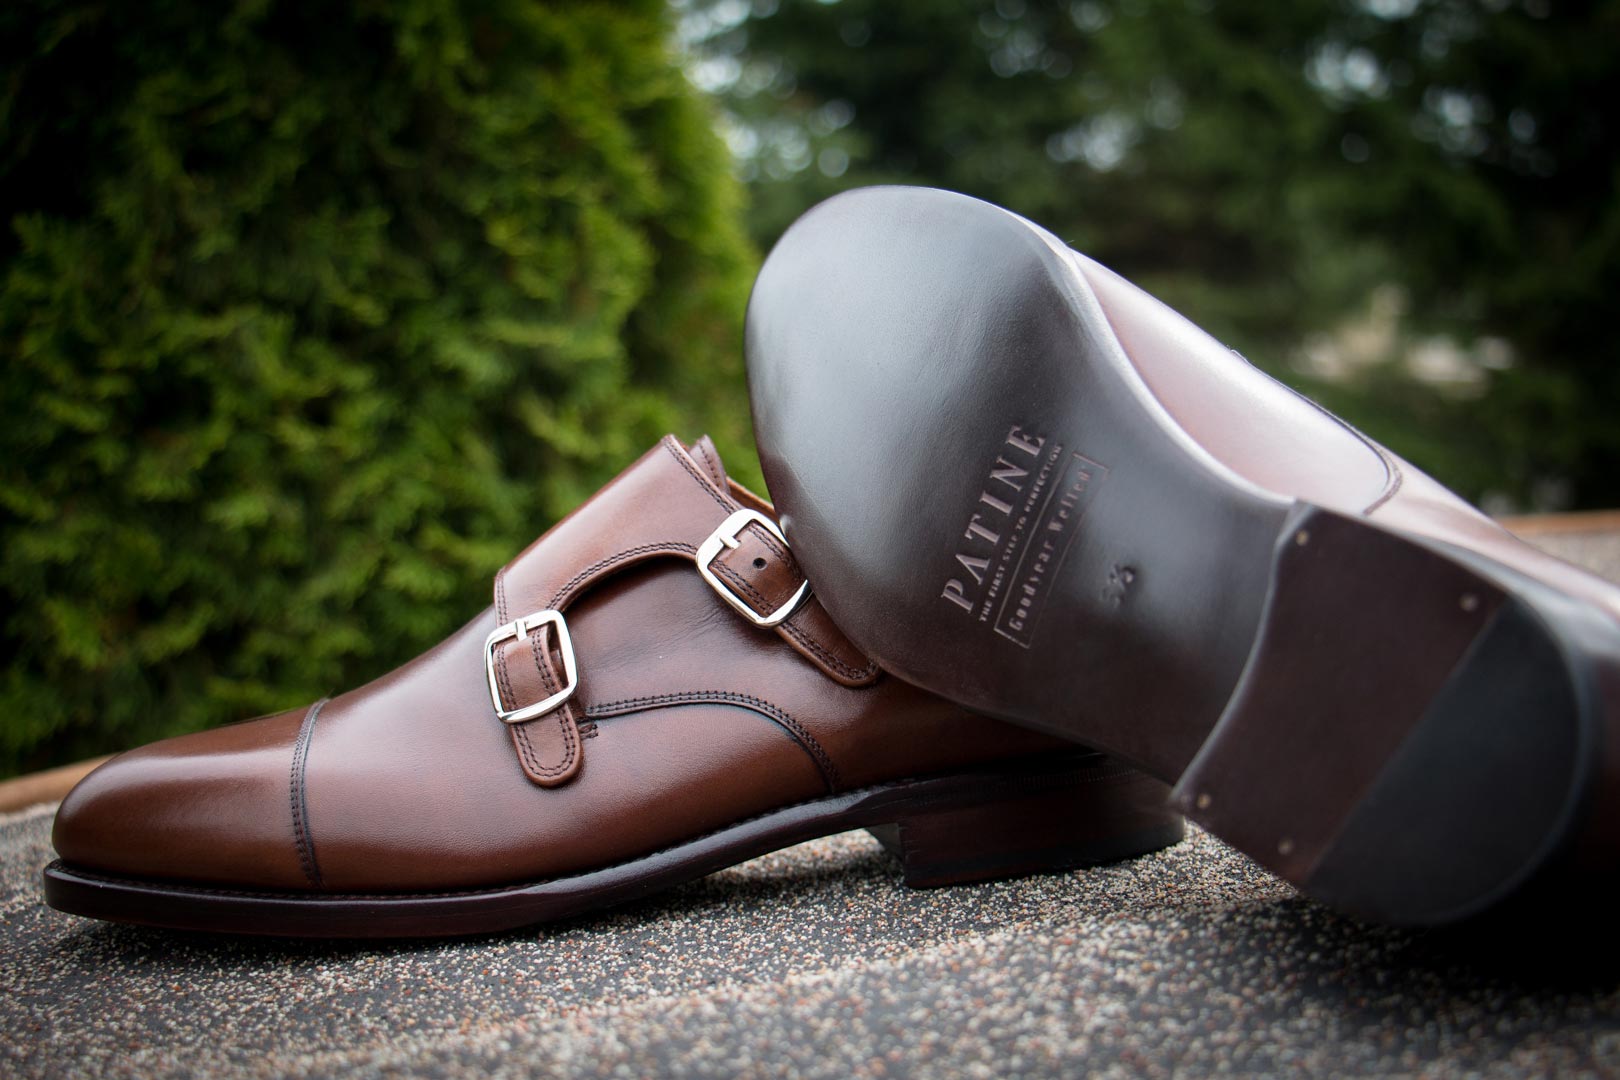 skórzane podeszwy krupony spody w męskich eleganckich butach klasycznych goodyear welted szytych ramowo